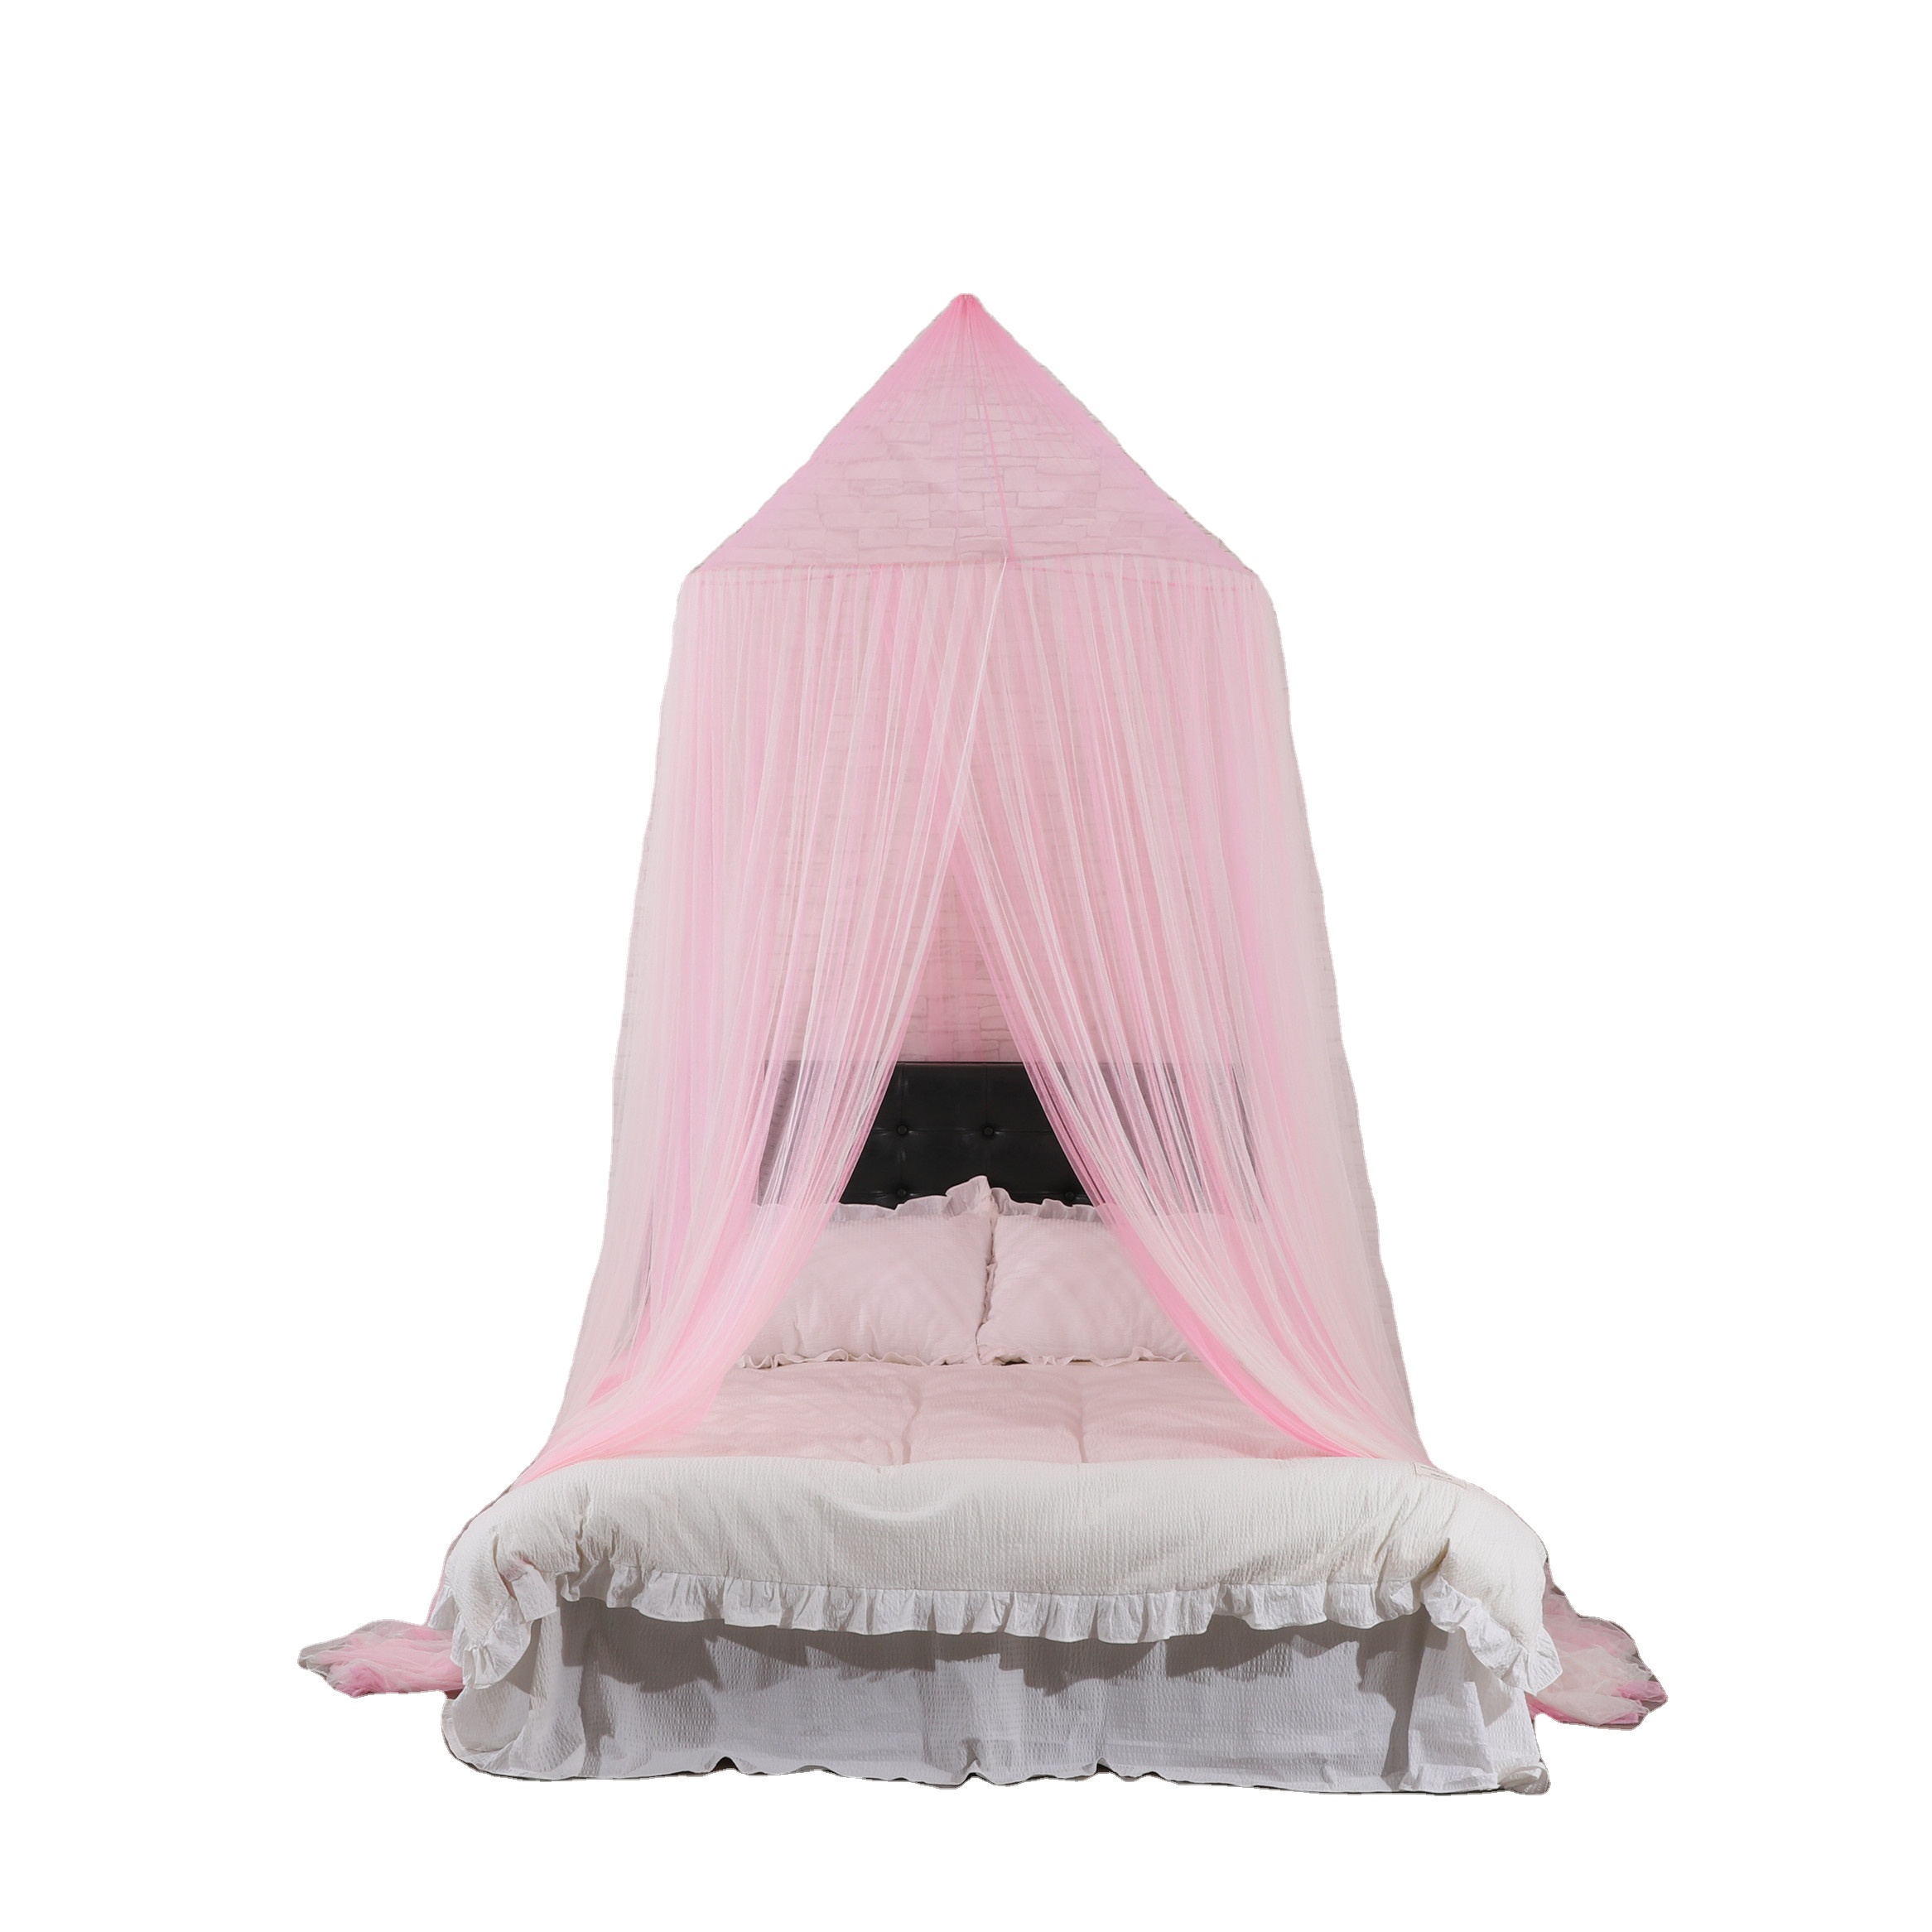 La mosquitera de alta calidad más popular, dosel de cúpula grande, red de cama doble, mosquitera de tamaño king, toldos de cama para niñas